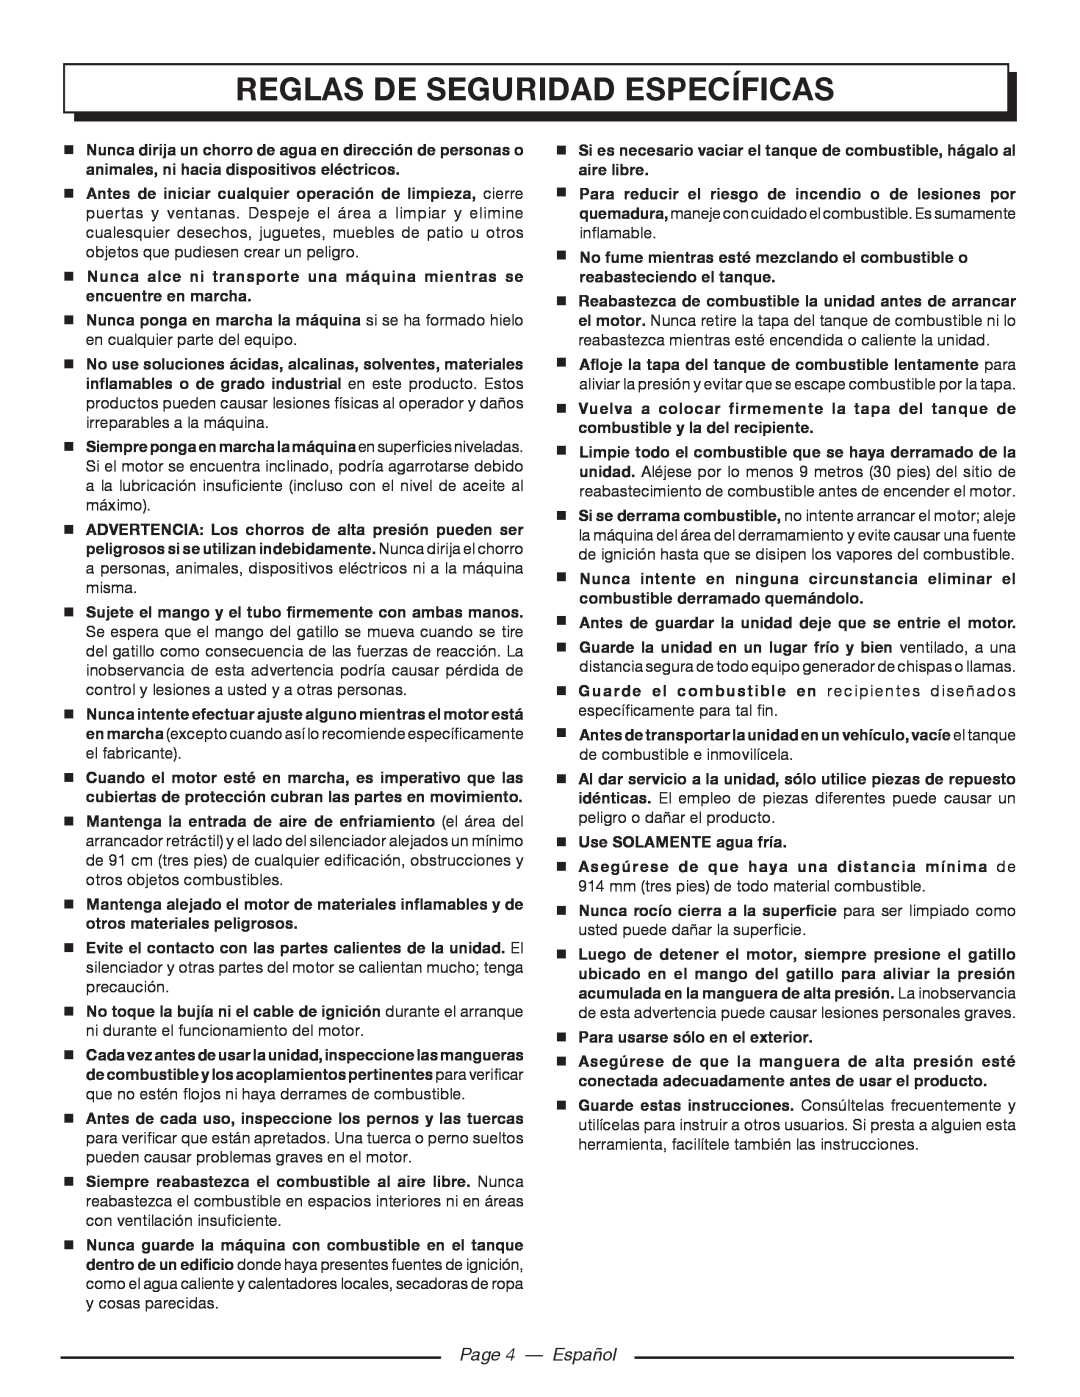 Homelite UT80516 manuel dutilisation Reglas de seguridad específicas, Page 4 - Español 